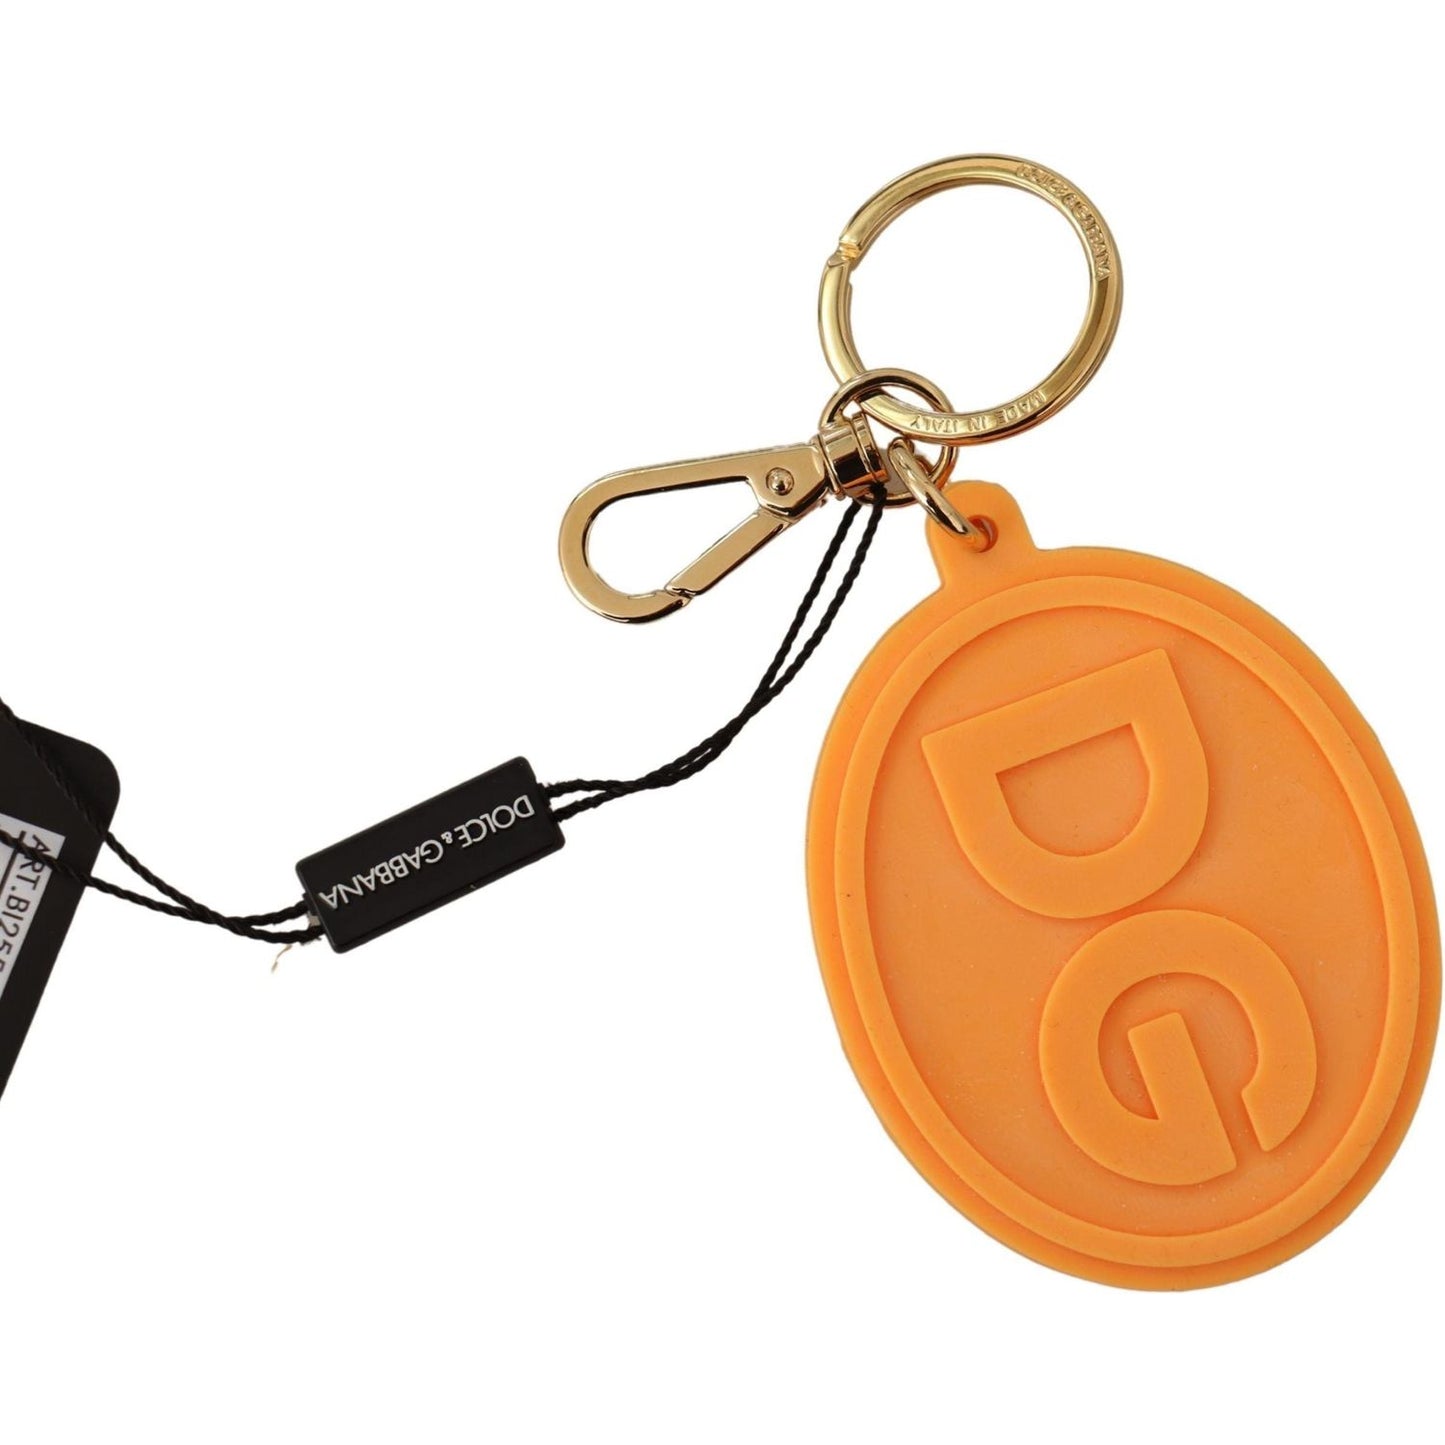 Stunning Orange Gold Keychain & Bag Charm Dolce & Gabbana